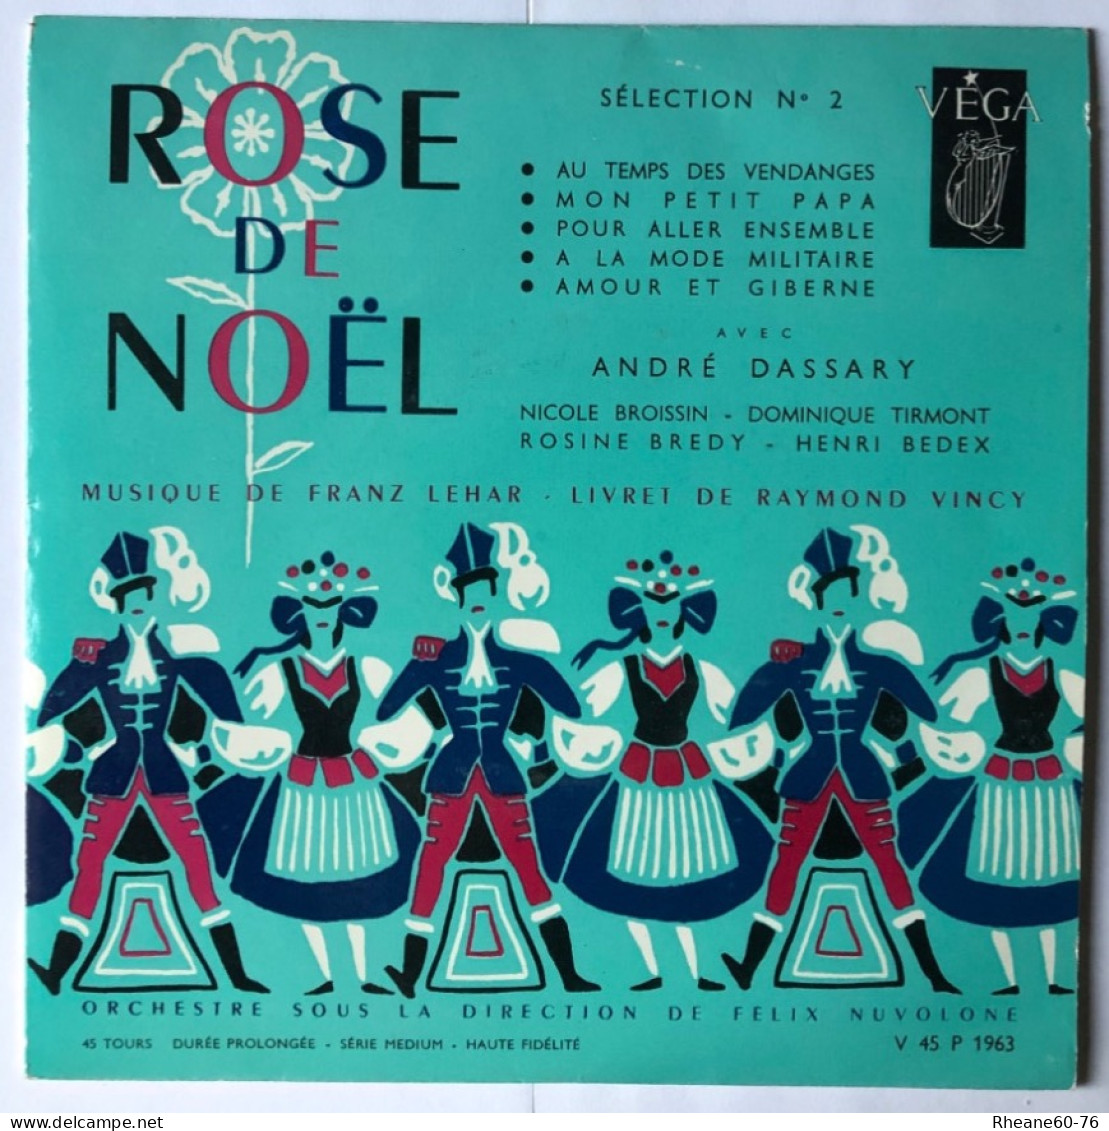 VEGA V 45 P 1963 - André Dassary Rose De Noël Sélection 2 - Musique LEHAR - Série Médium Haute Fidélité - Sans Livret - Special Formats